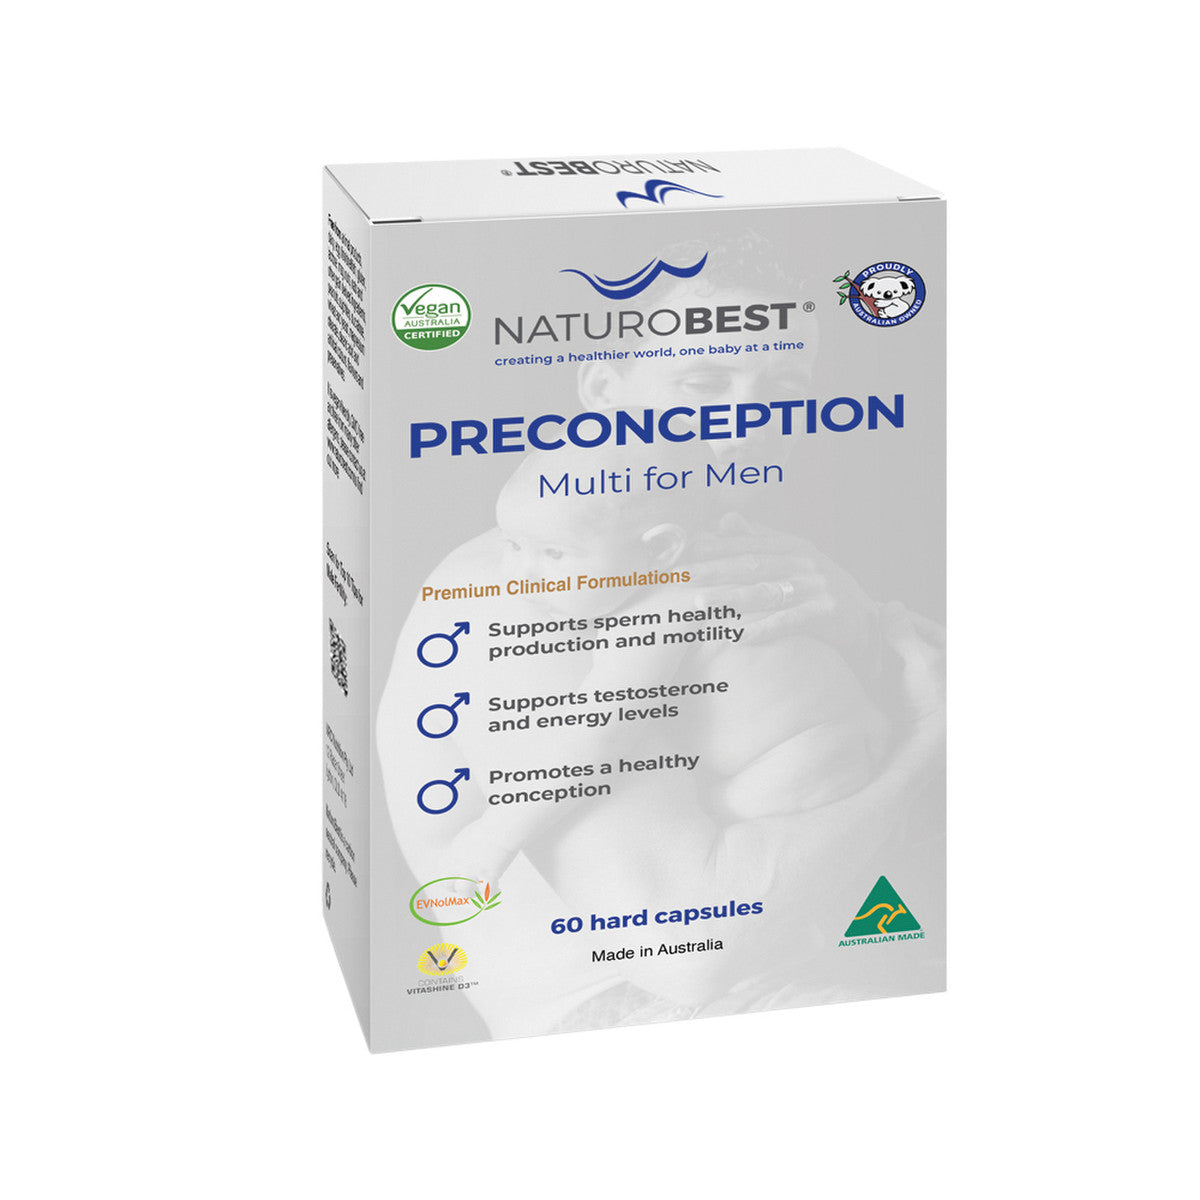 NaturoBest - Preconception Multi for Men